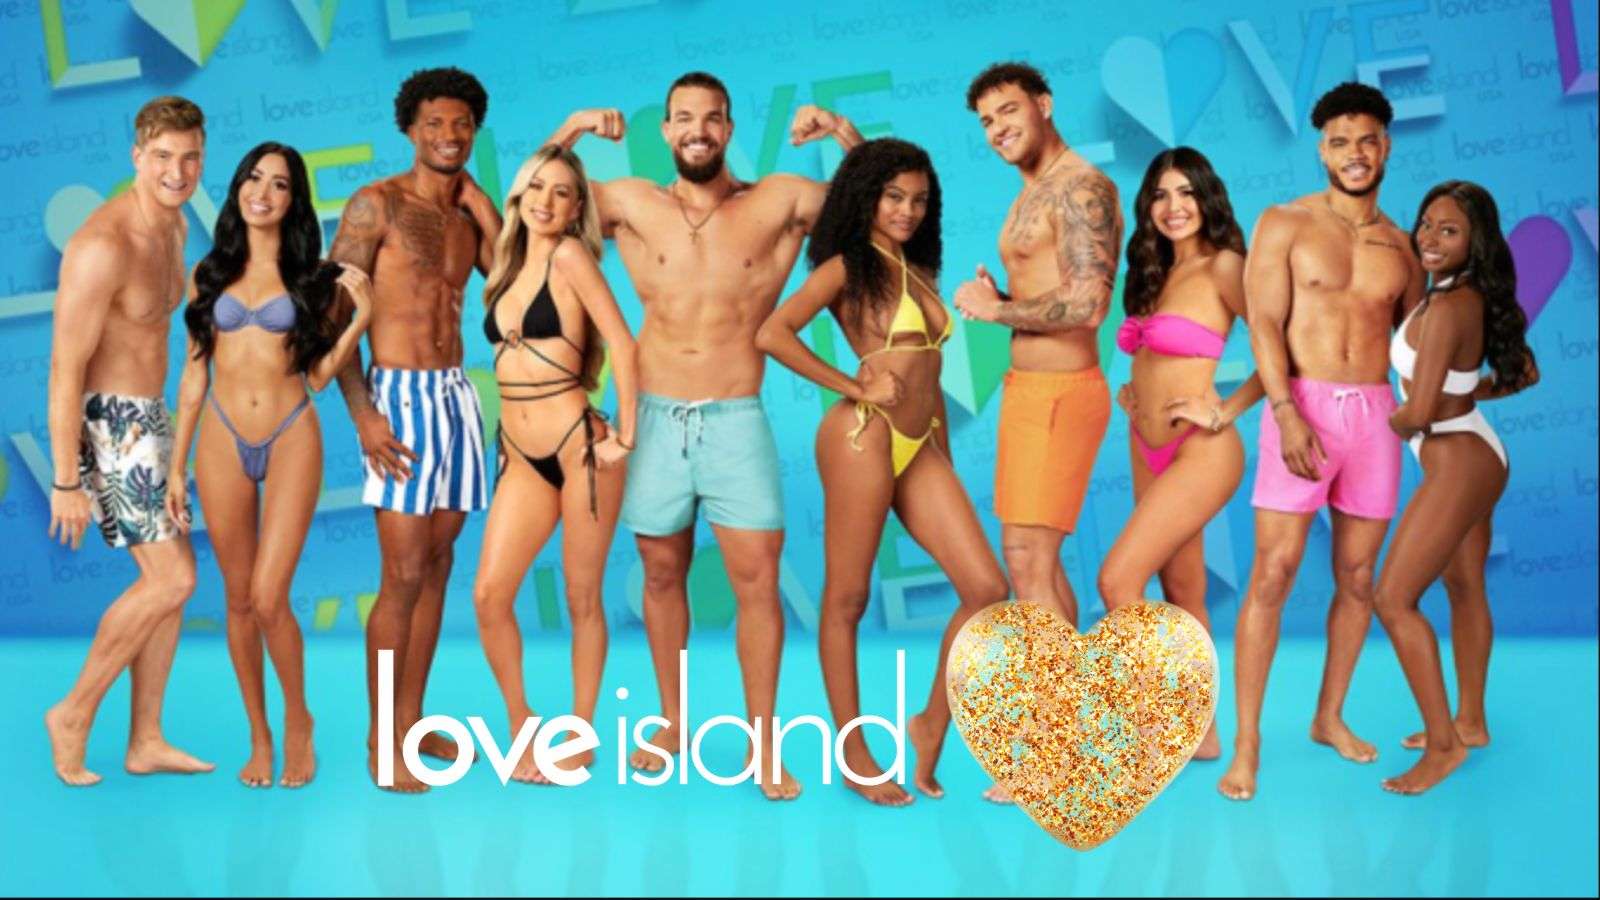 How to watch Love Island USA